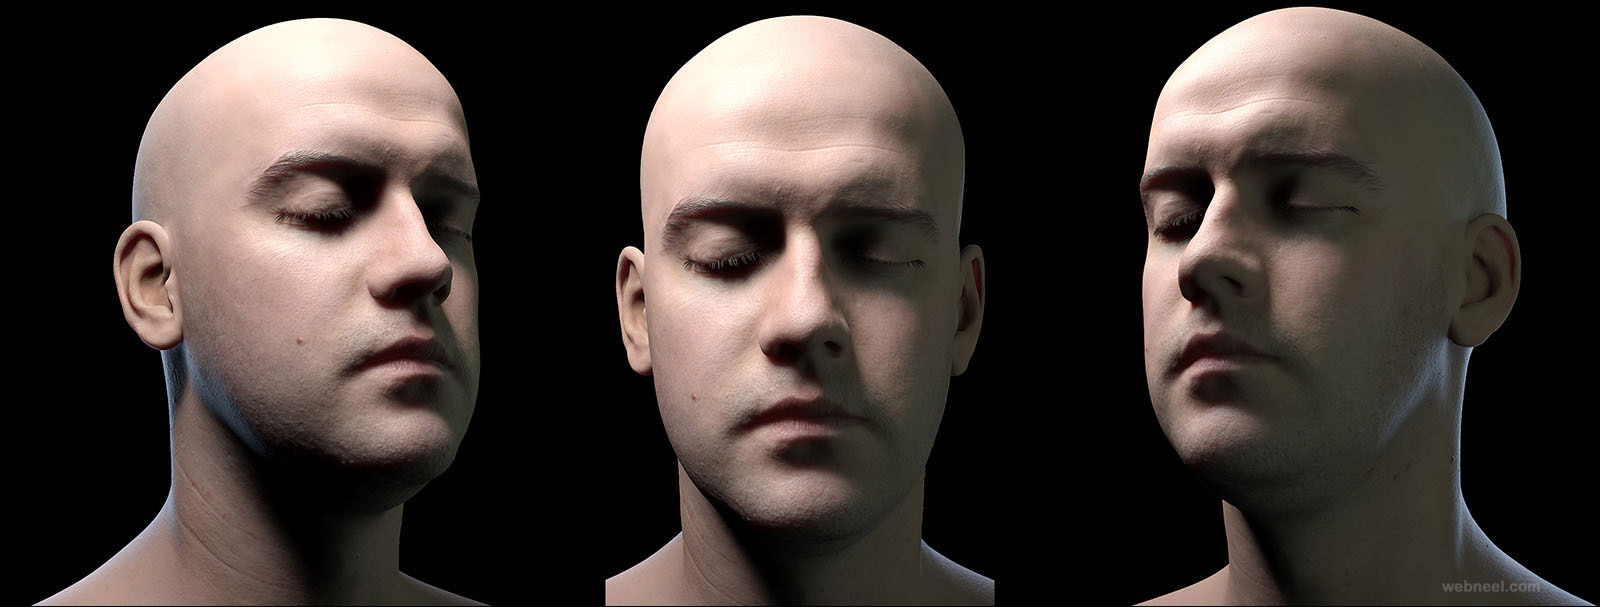 realistic 3d men portraits